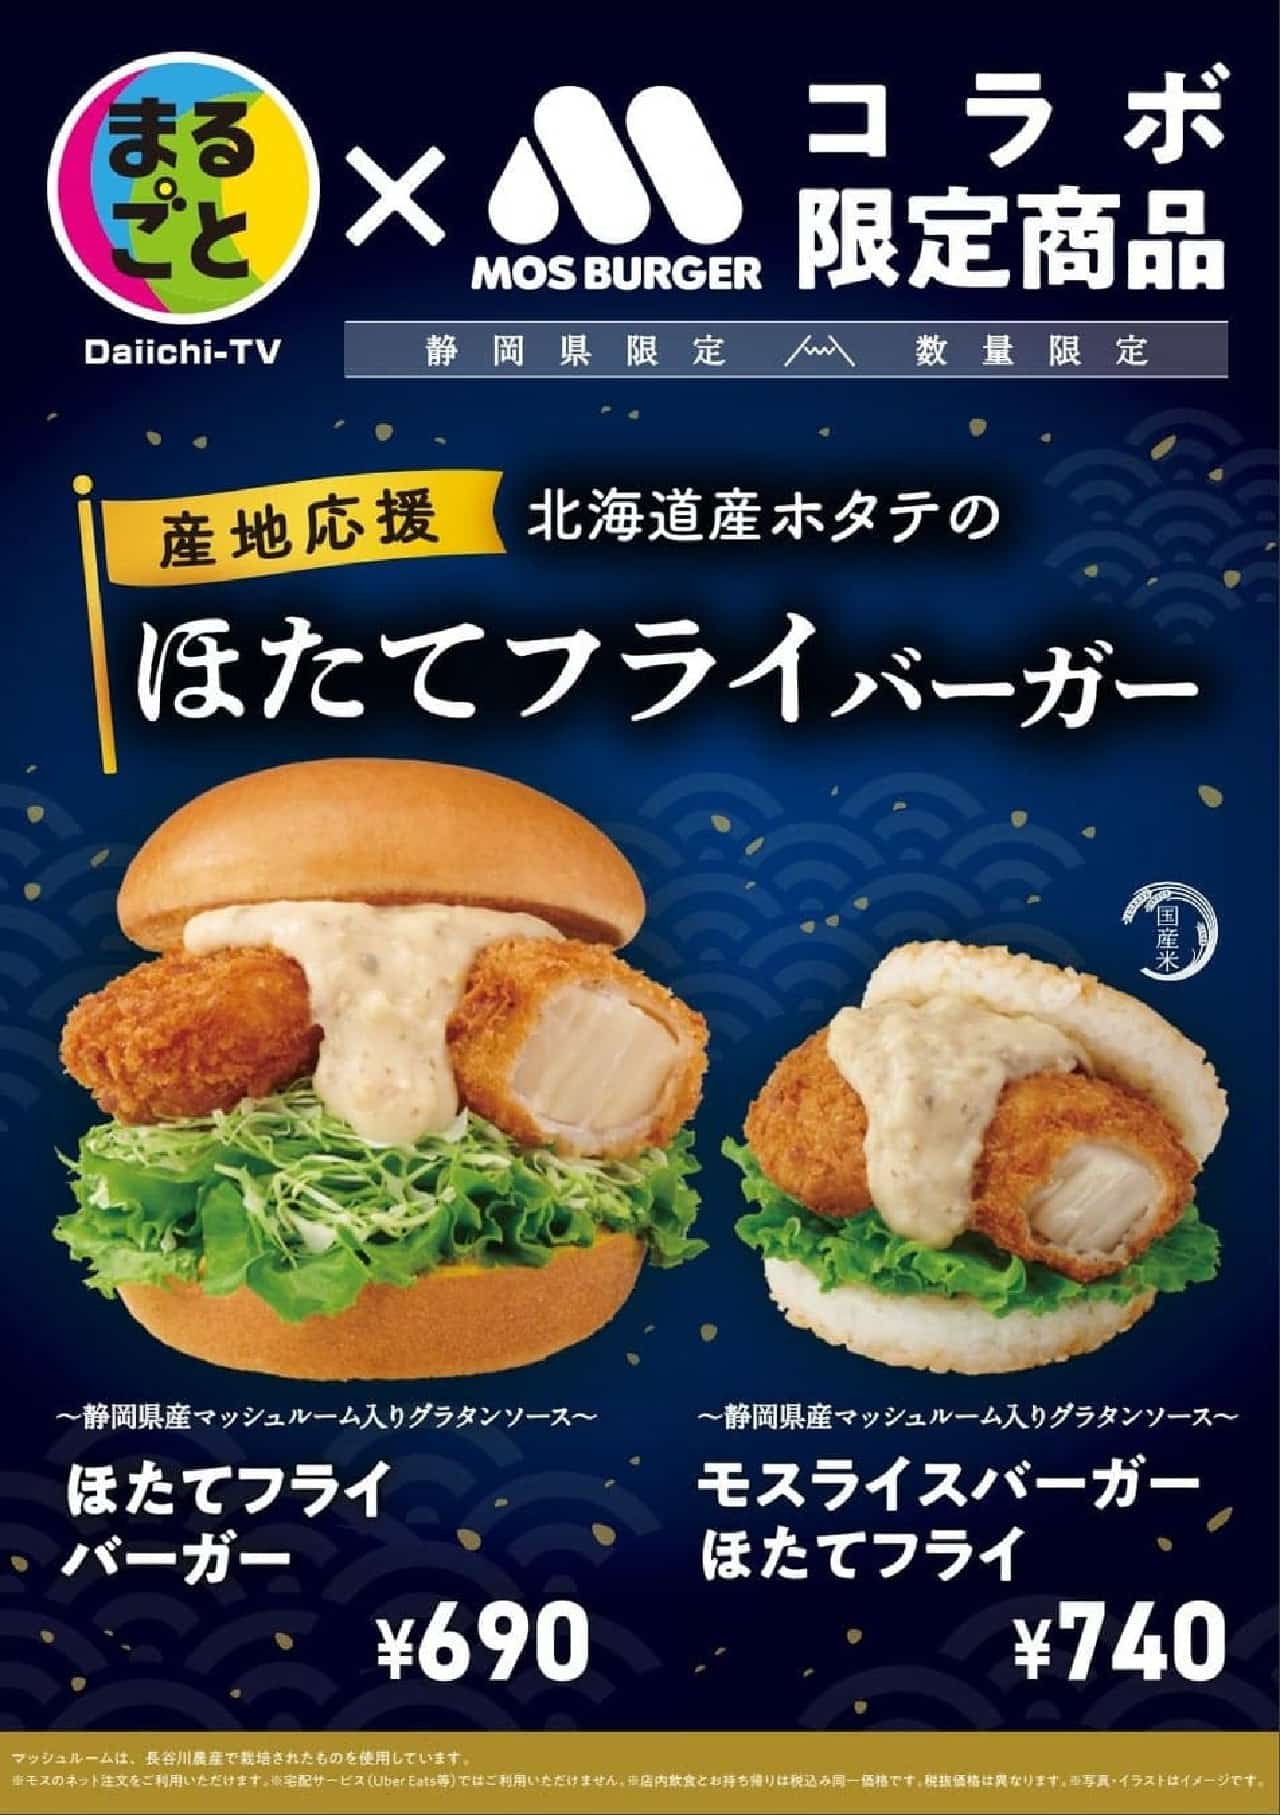 2月16日、モスバーガー静岡県内限定で「ほたてフライバーガー」など静岡県産食材使用の新商品3種類を販売開始 画像1